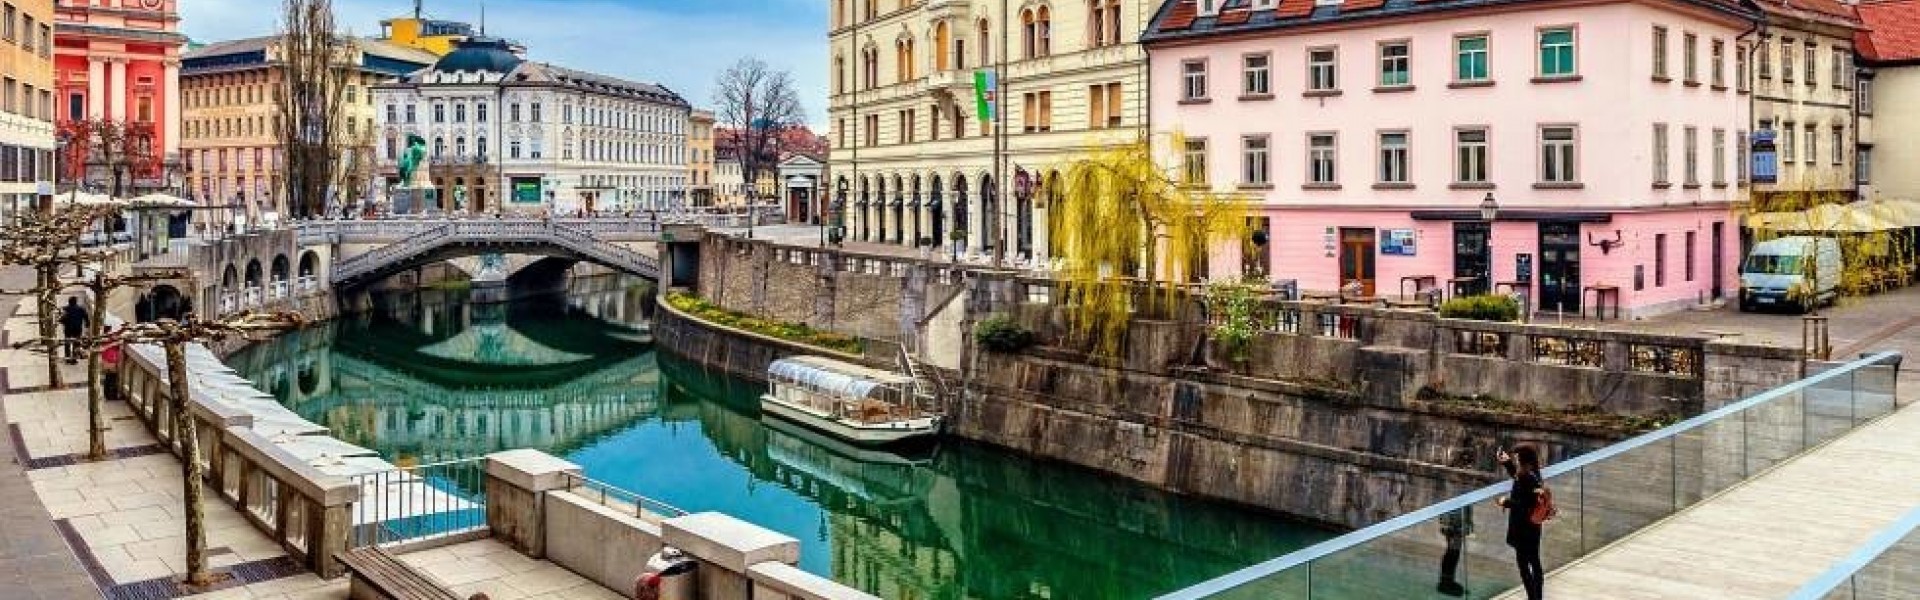 Ljubljana & Slovenia